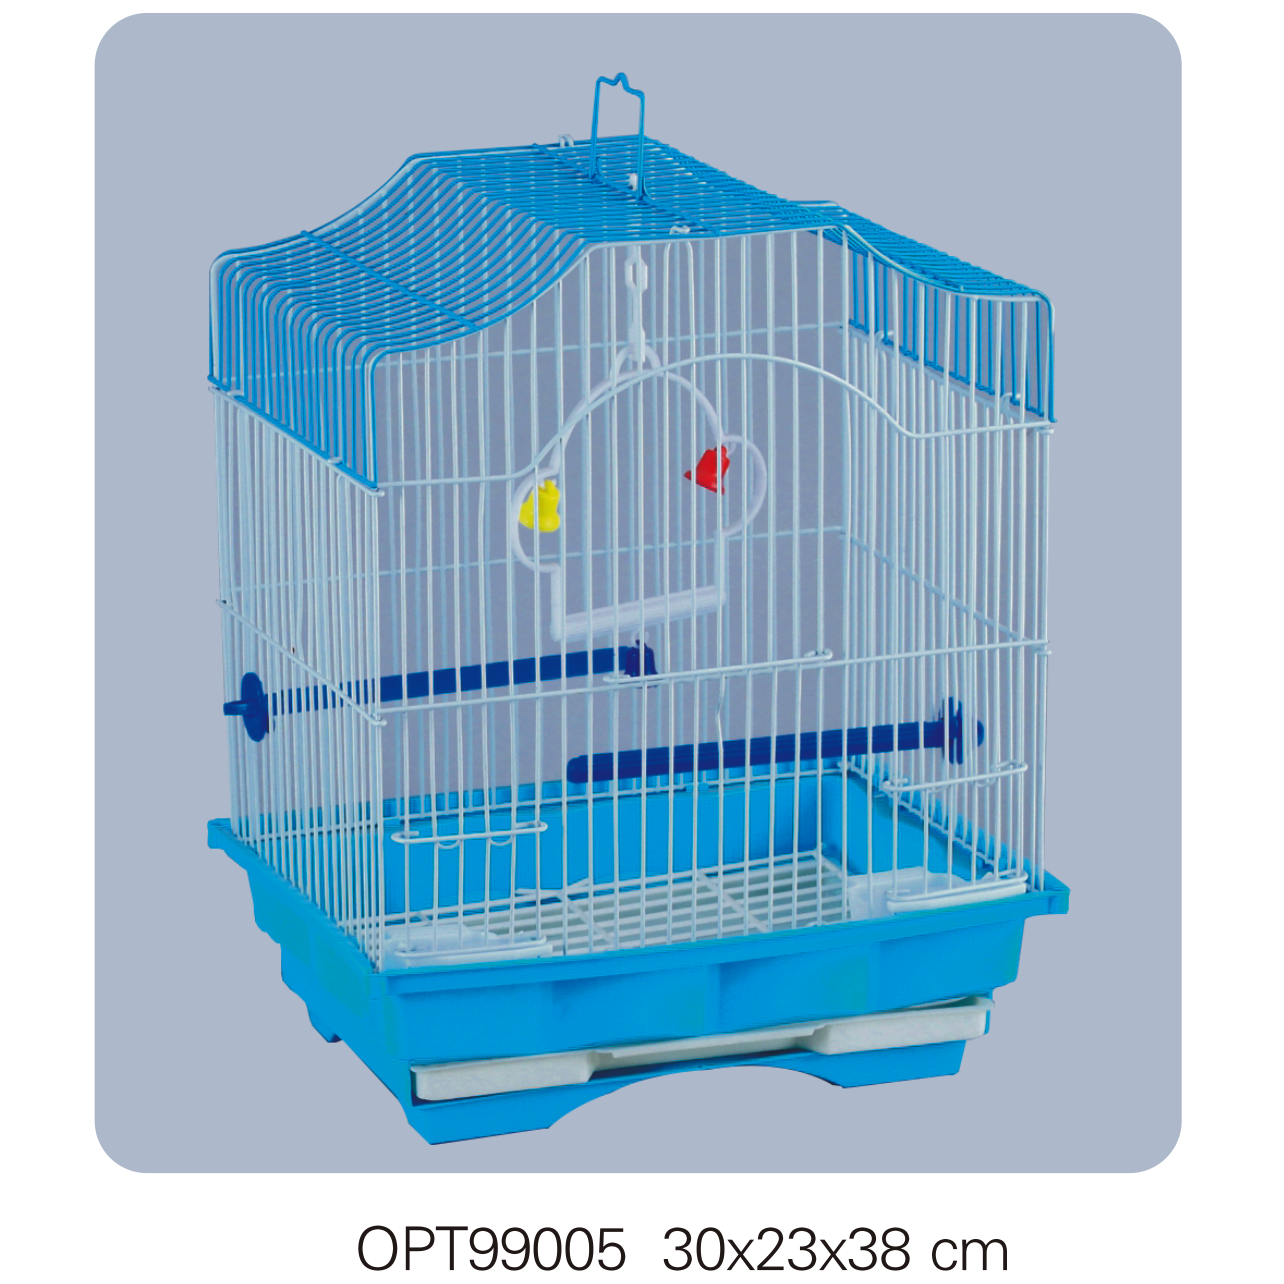 OPT99005 30x23x38cm Bird cages